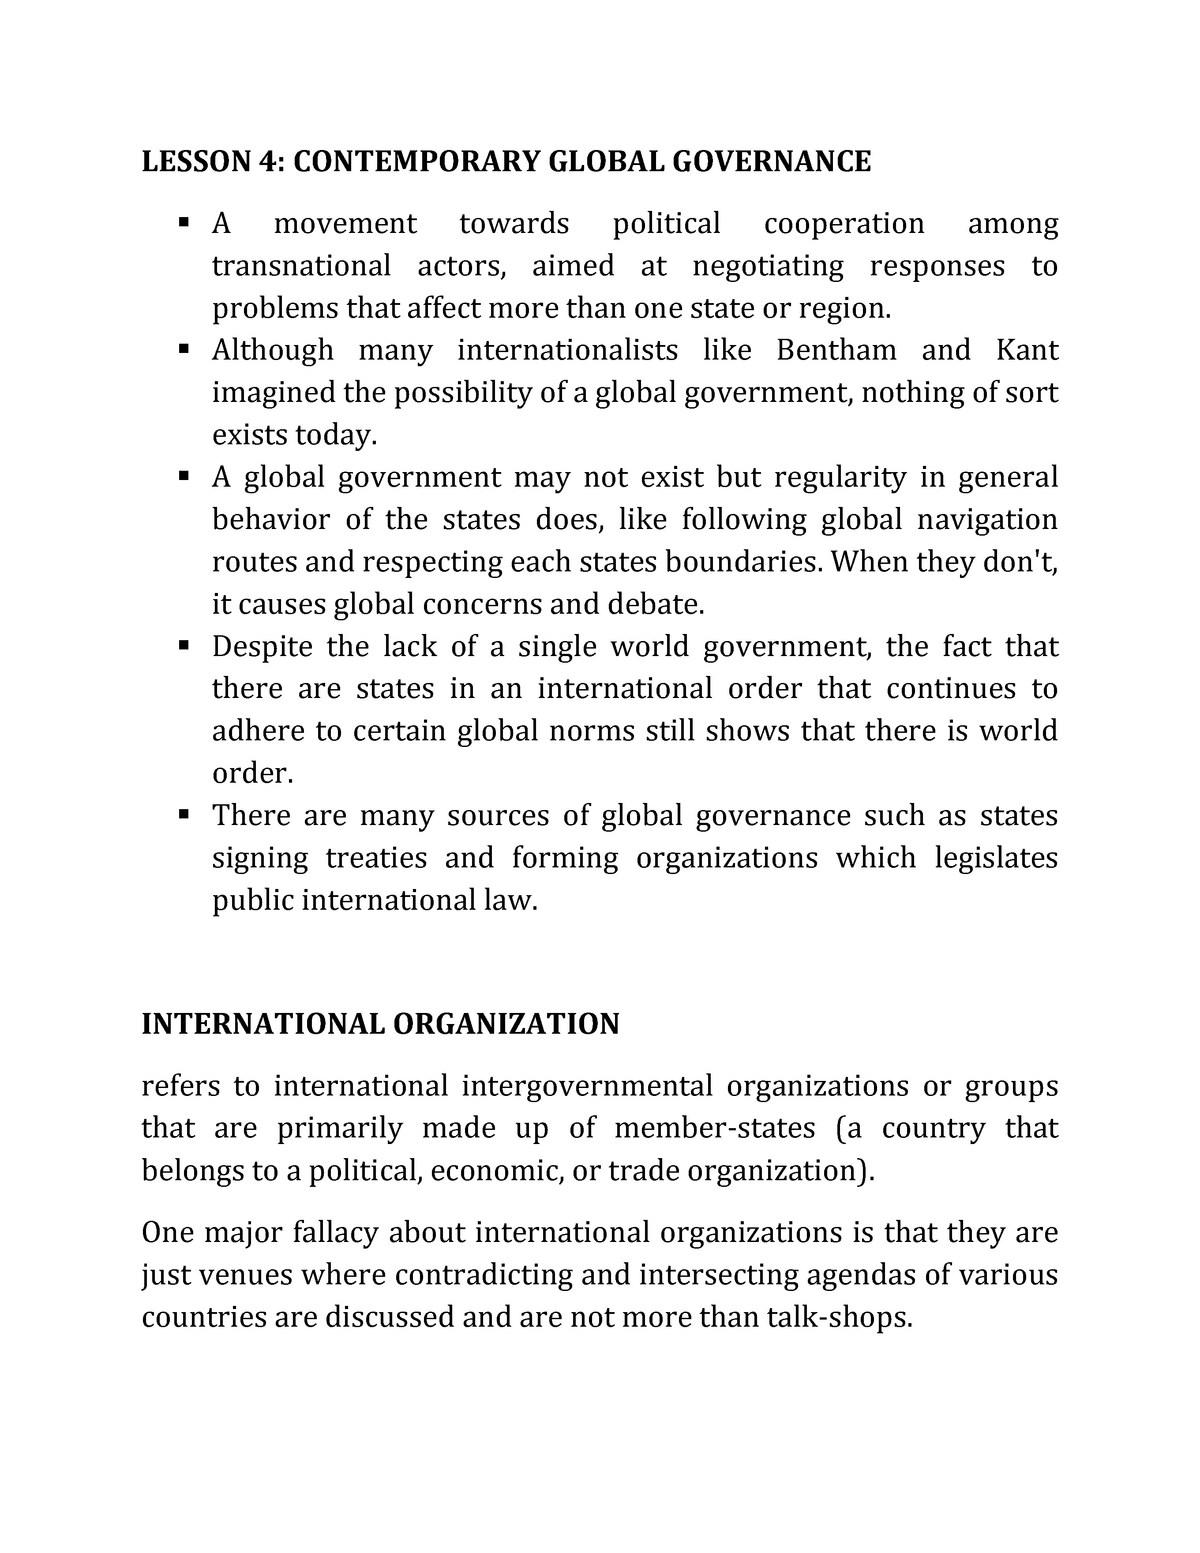 thesis global governance